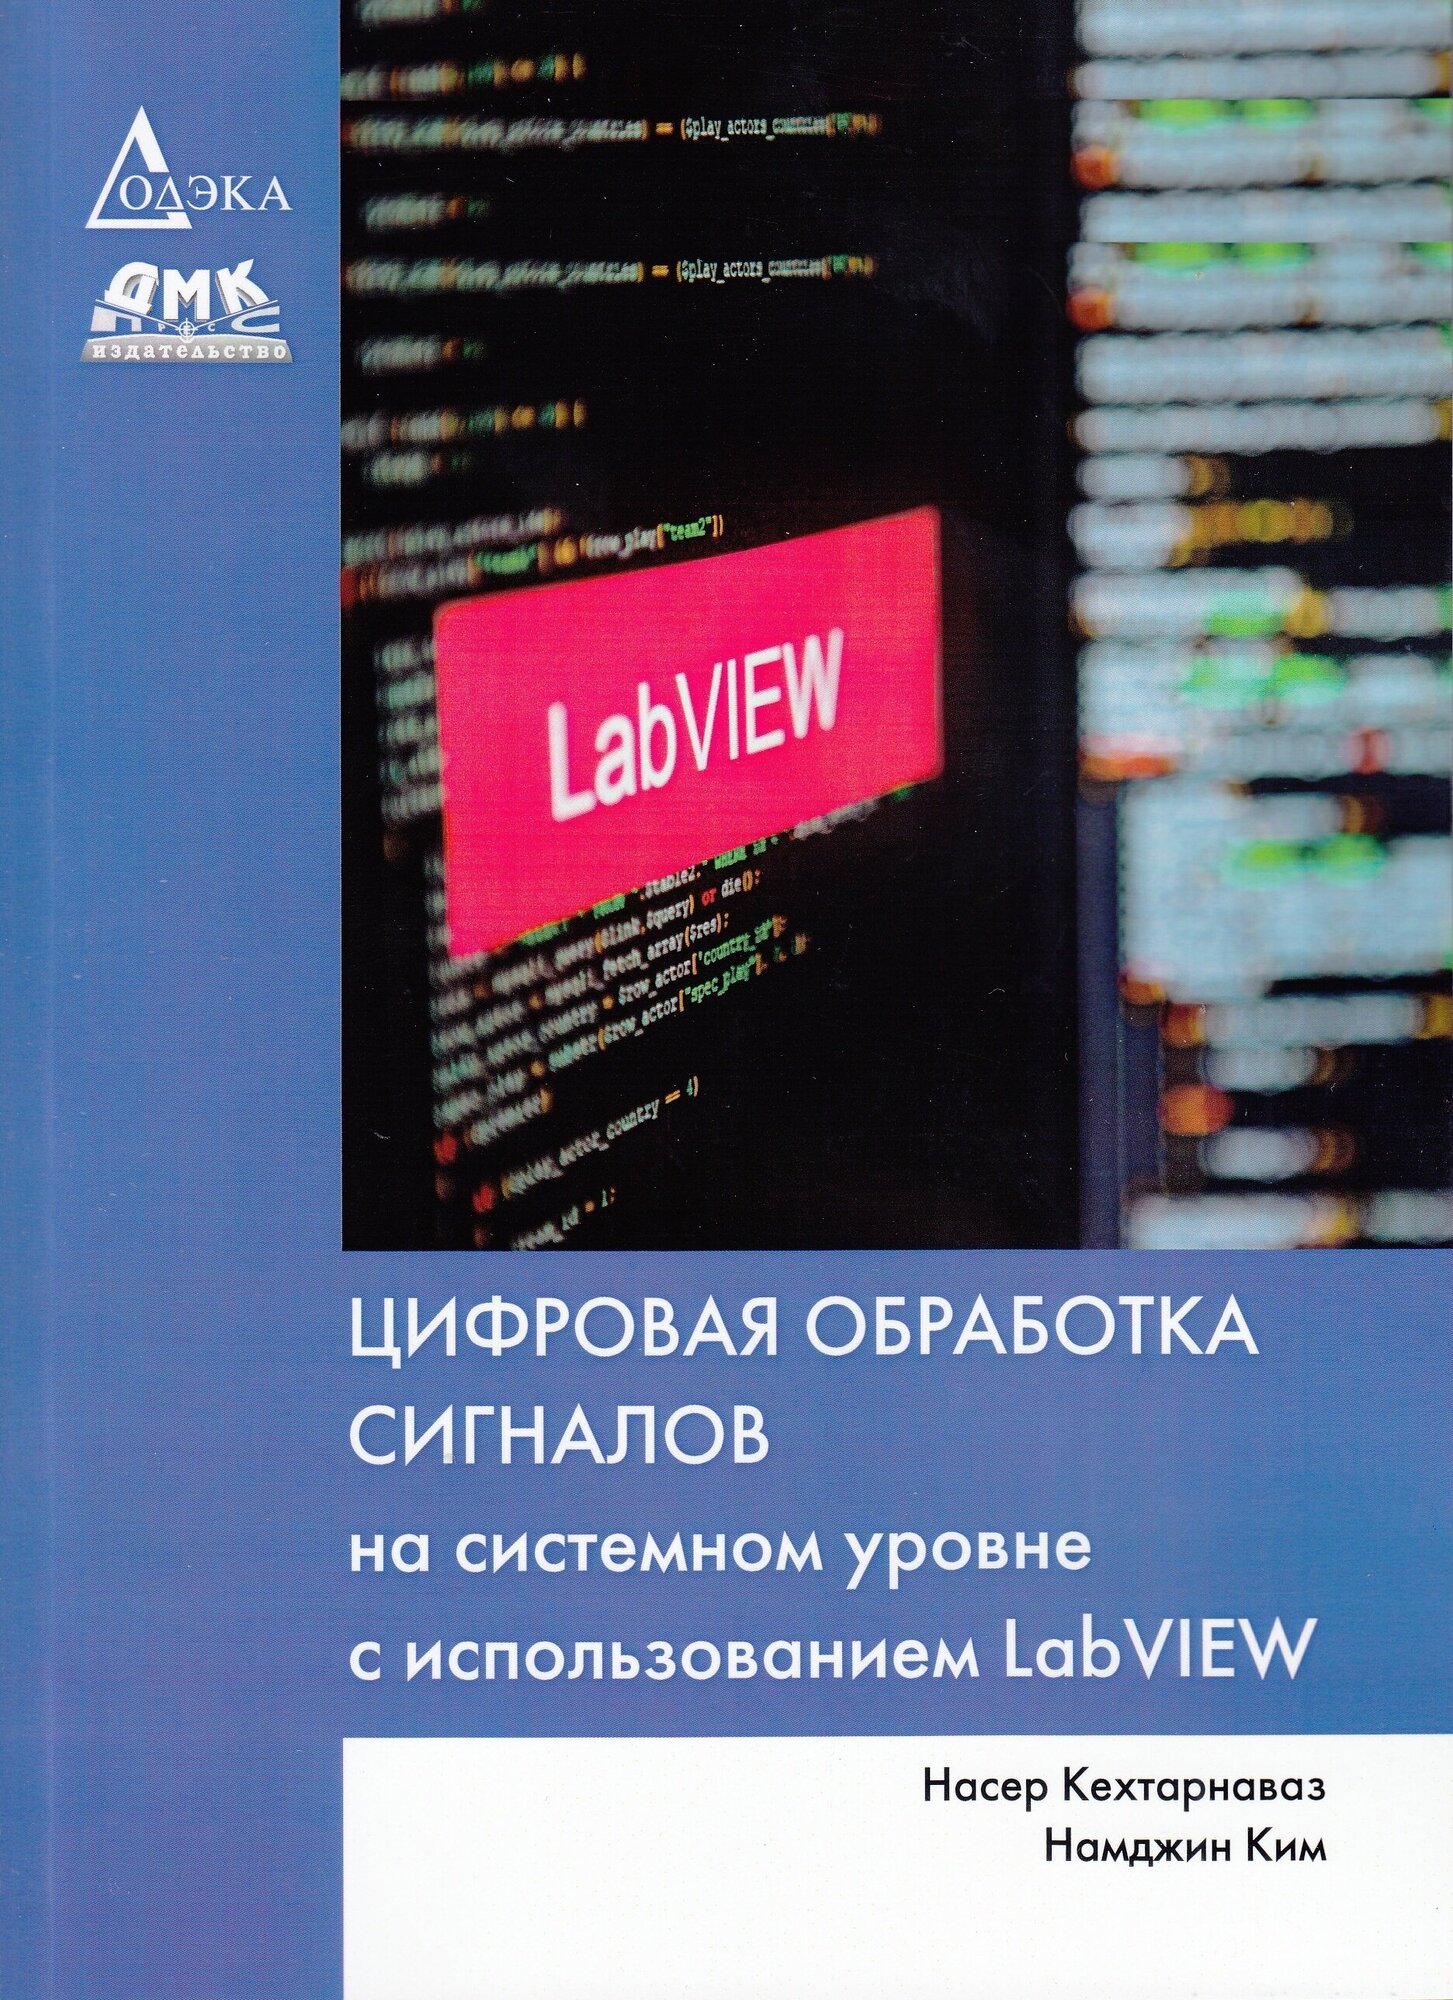 Цифровая обработка сигналов на системном уровне с использованием LabVIEW, Кехтарнаваз Н, Ким Н.